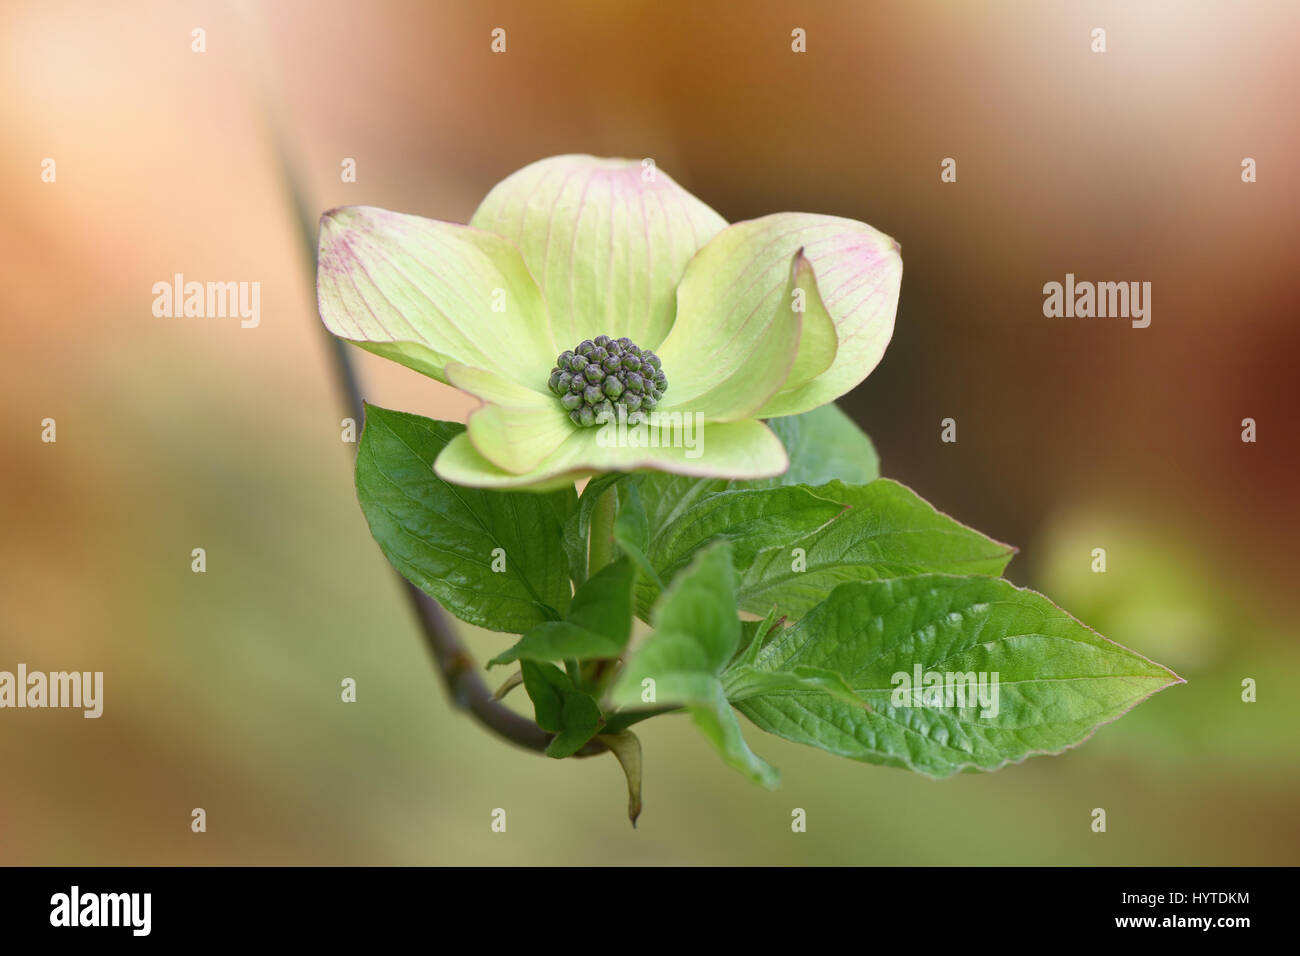 Cornus nuttallii 'Pink Blush' spring flower/bracts taken against a soft background Stock Photo